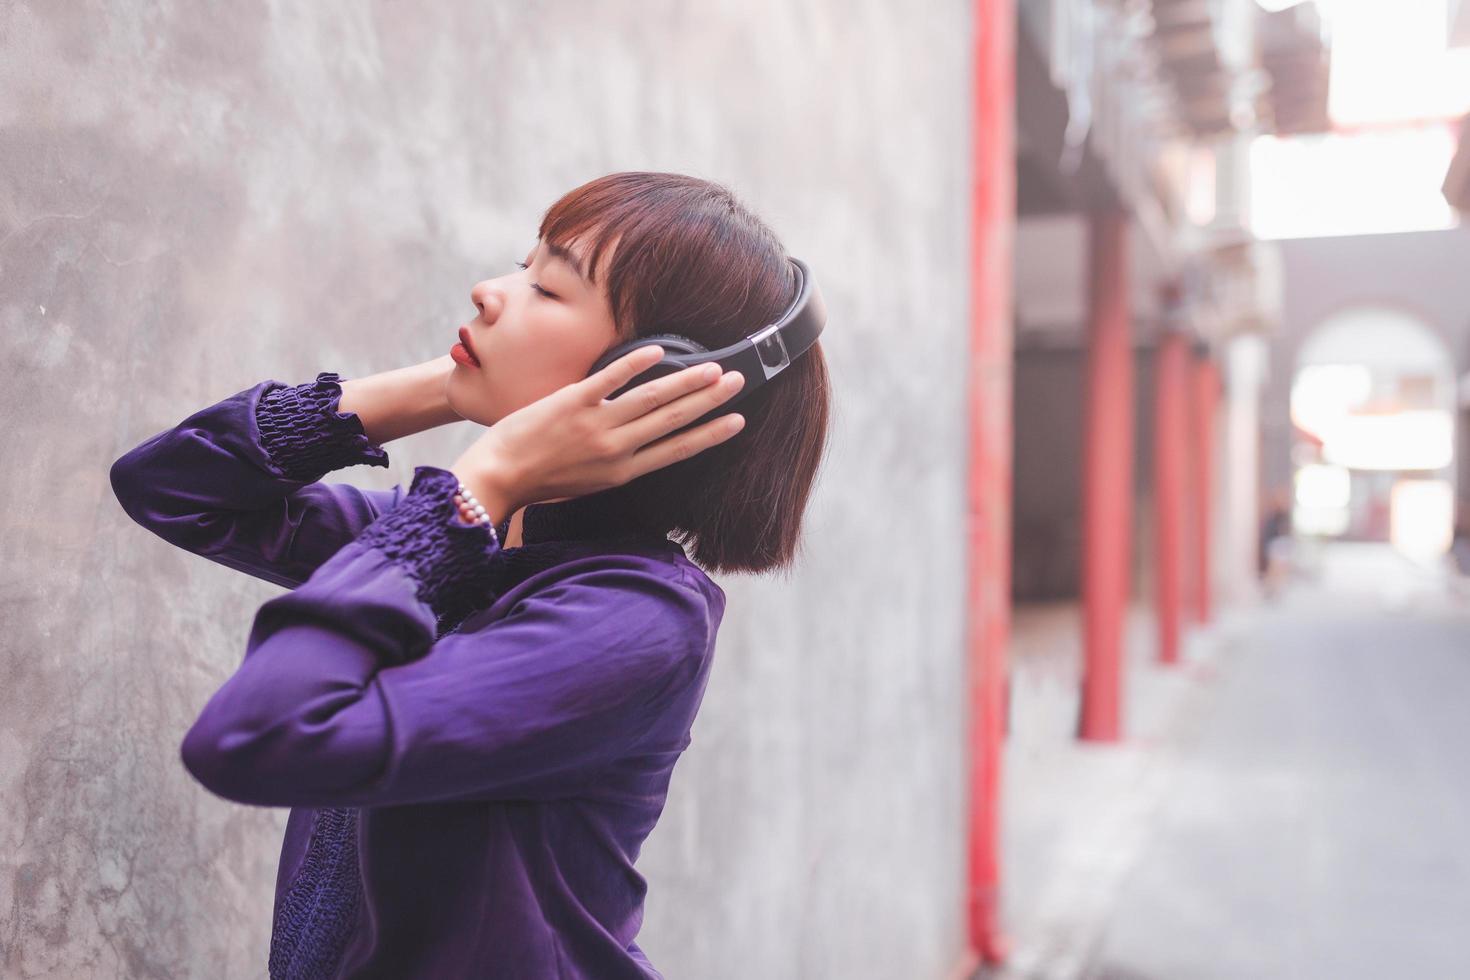 gelukkige jonge aziatische vrouw die naar muziek luistert met een koptelefoon foto